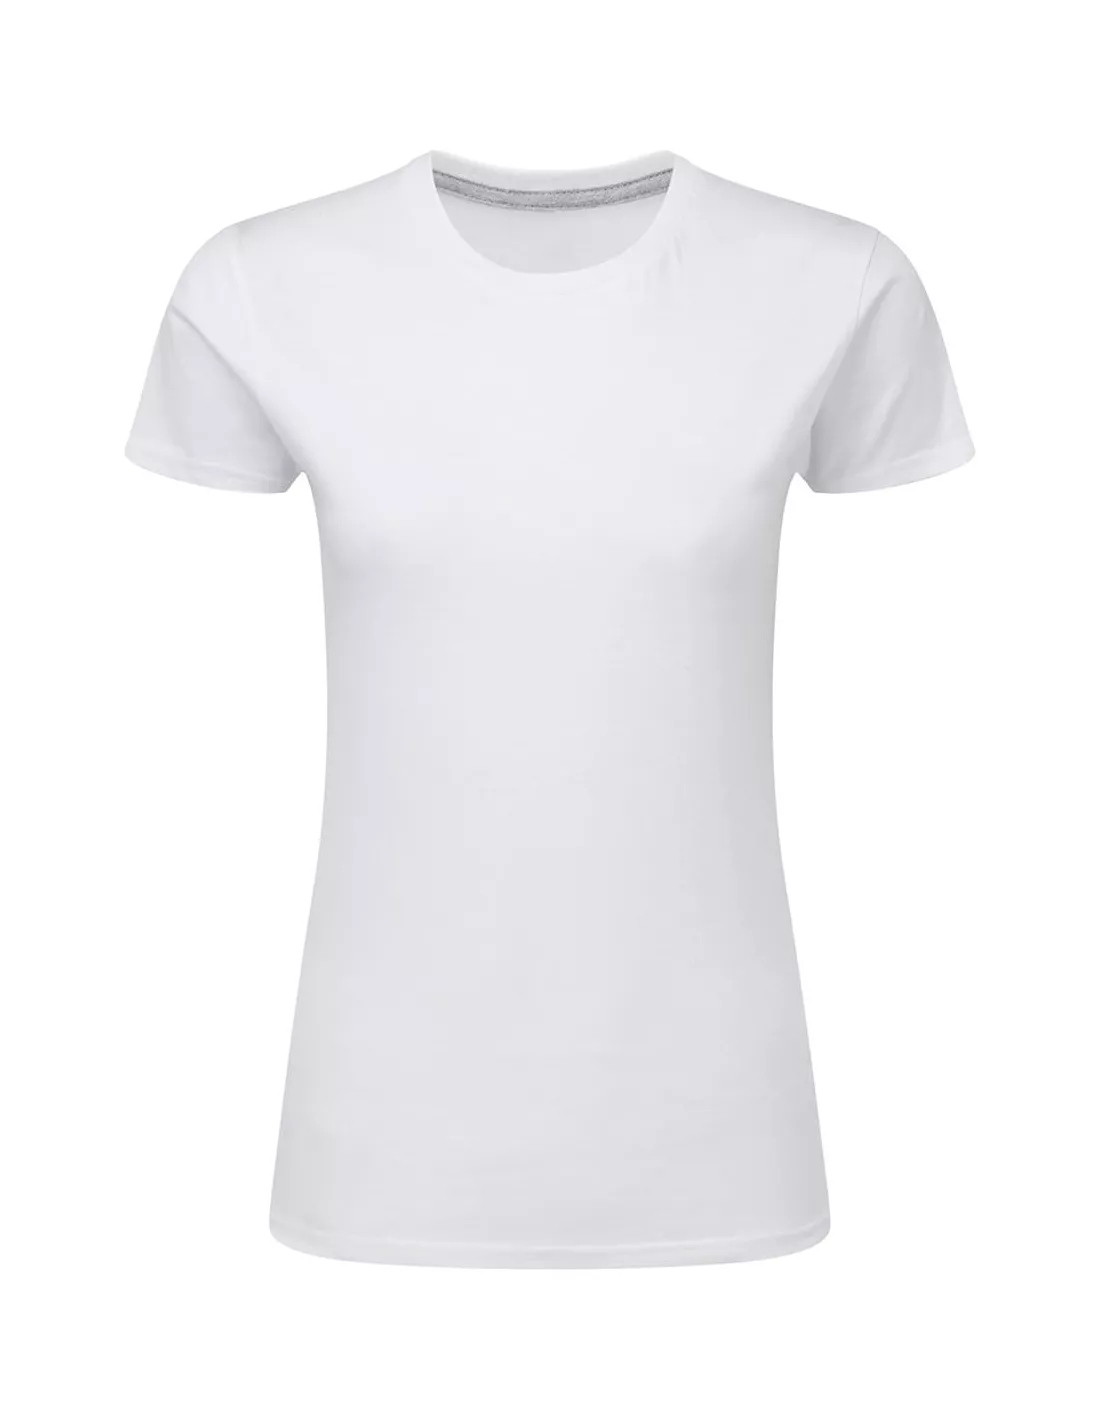 Camiseta mujer Perfect Print sin...